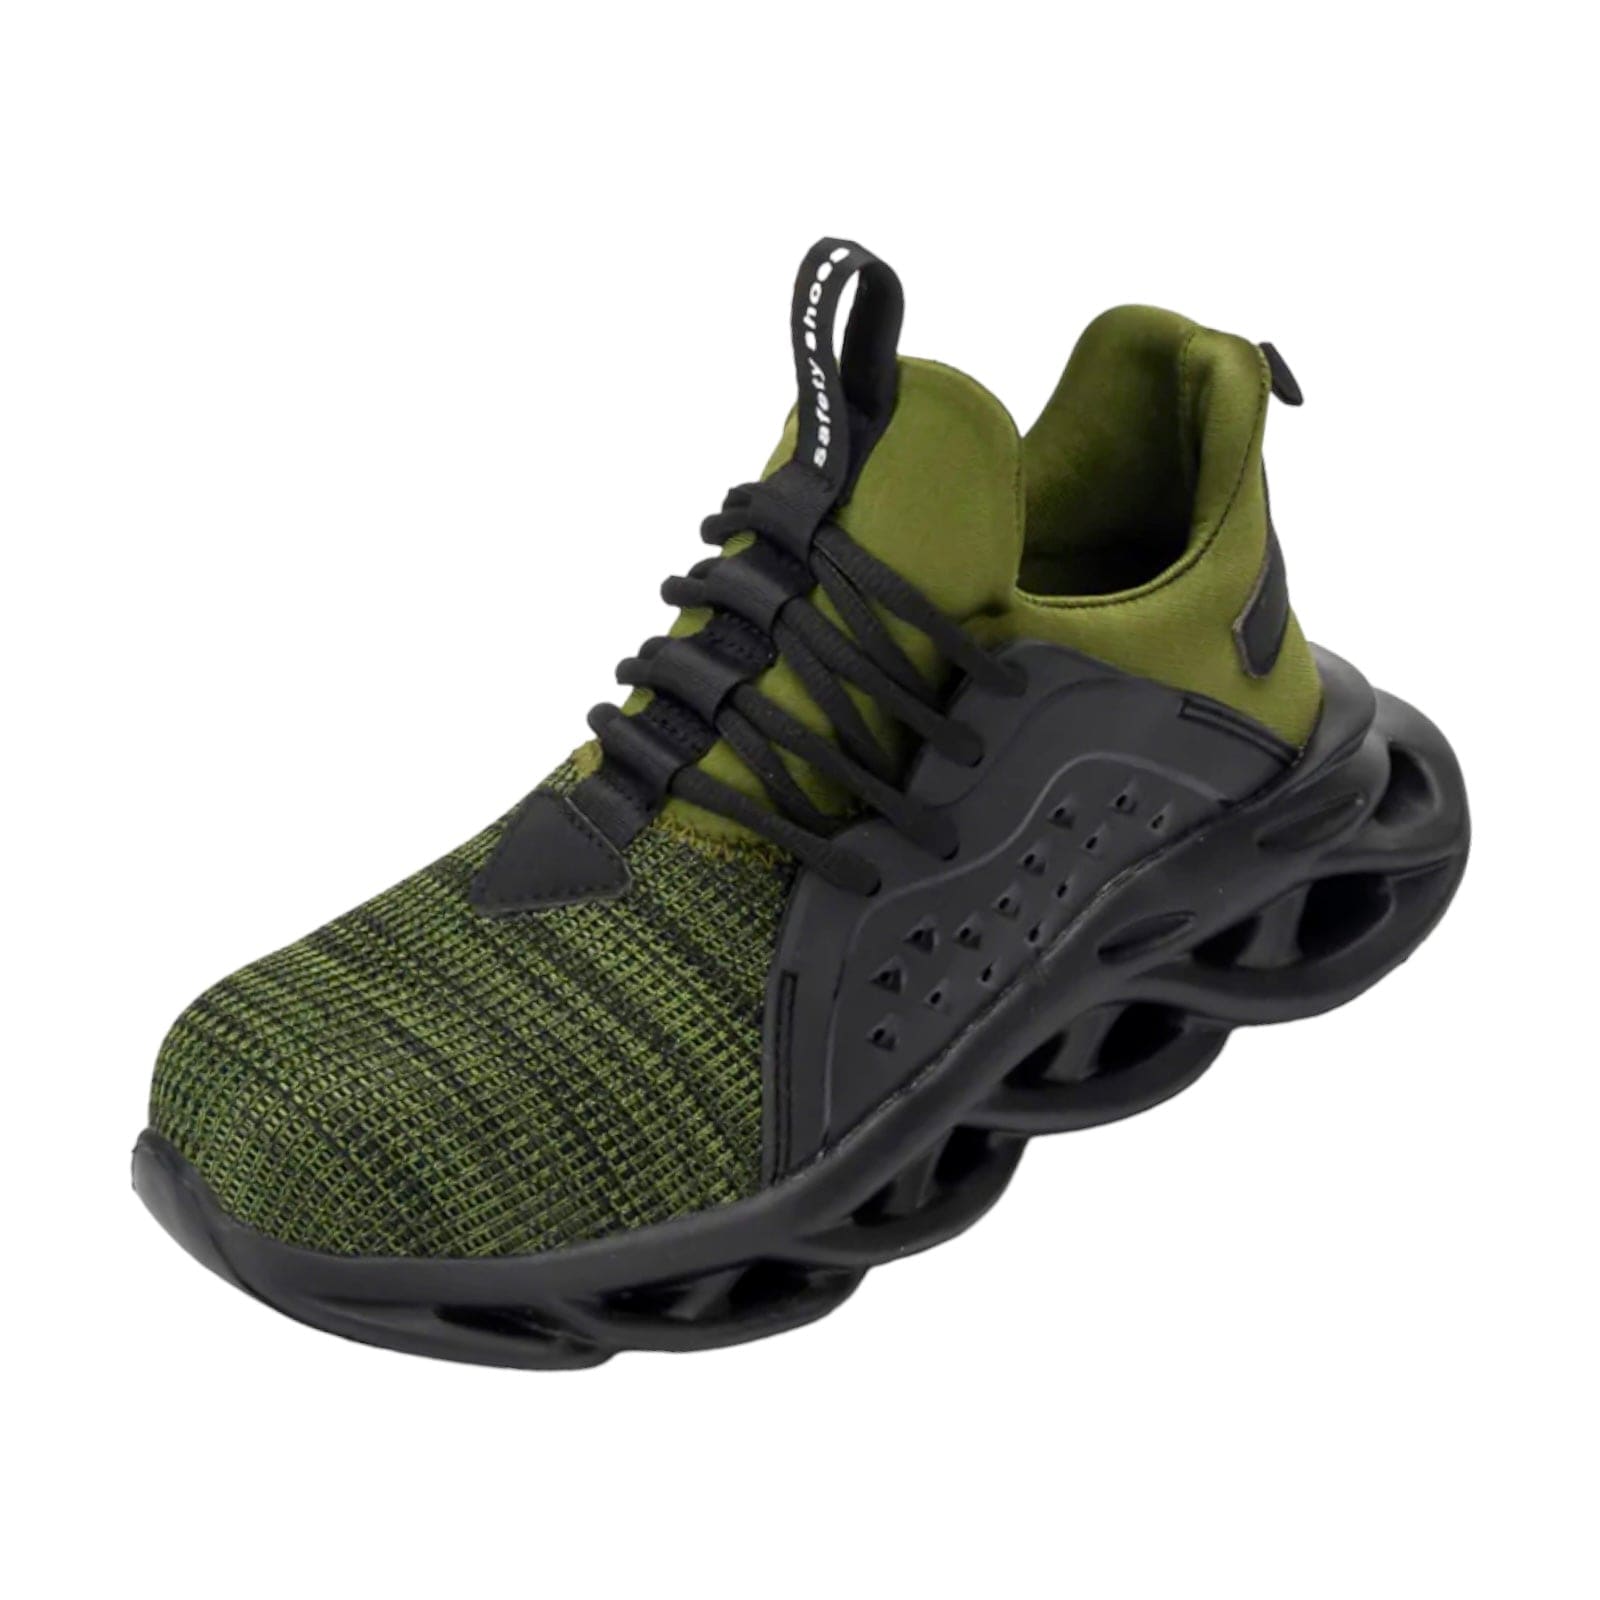 black military green sneakers kraken flashlander indestructible men shoes front side